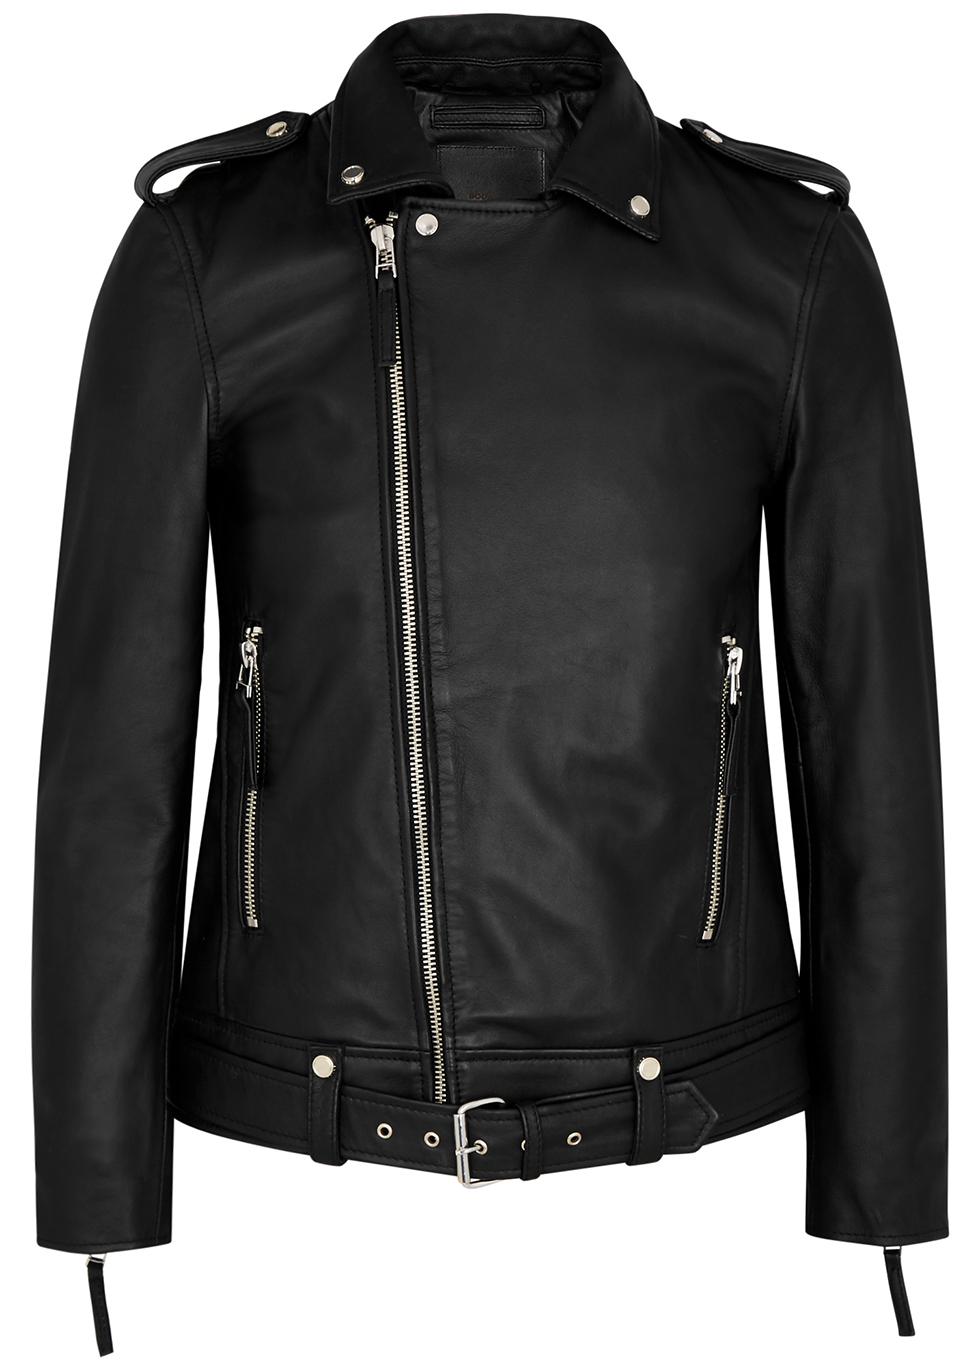 Voyager black leather biker jacket by BODA SKINS